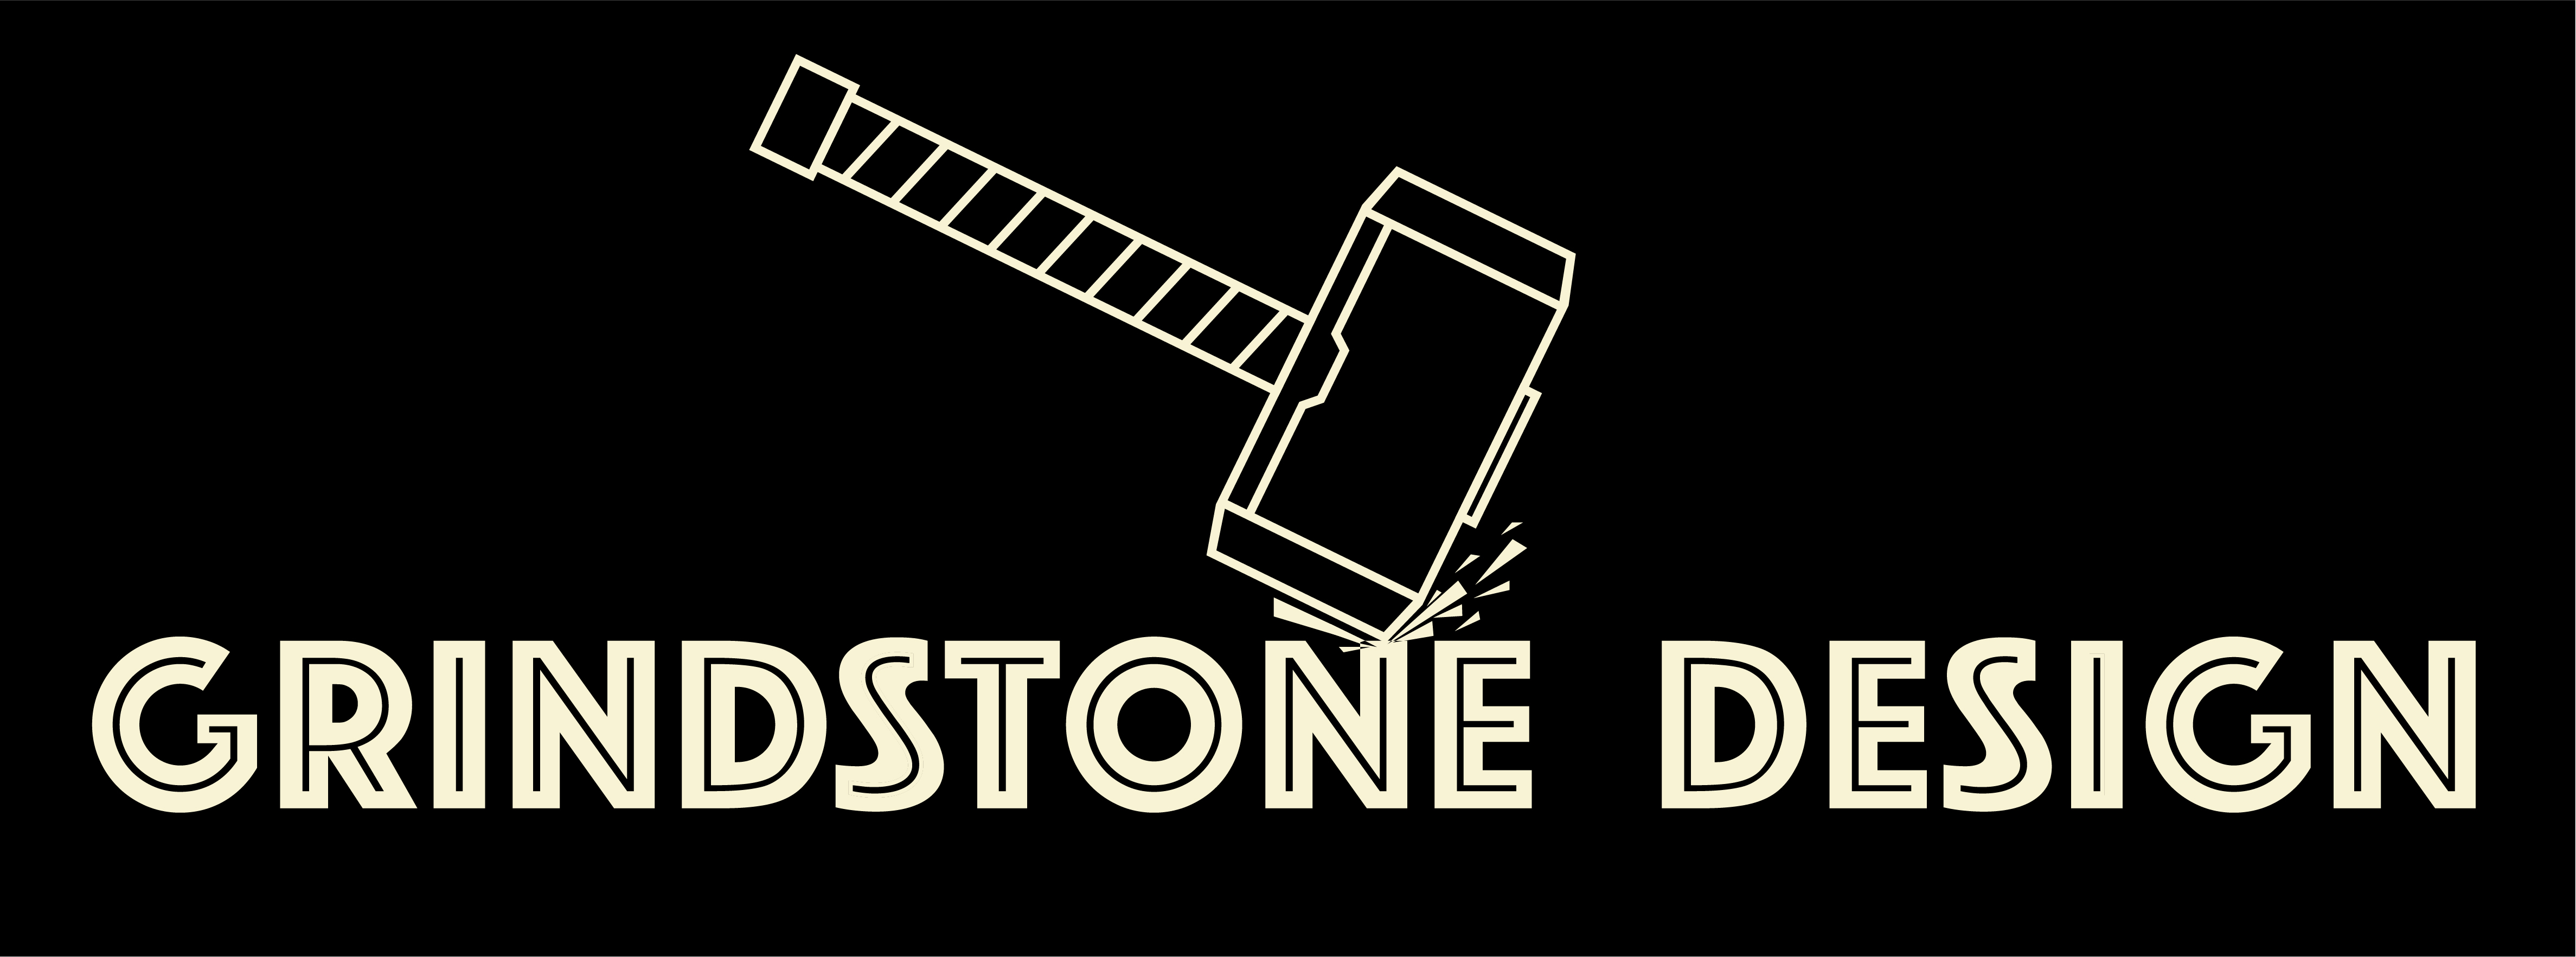 Grindstone-Design-Logo.jpg